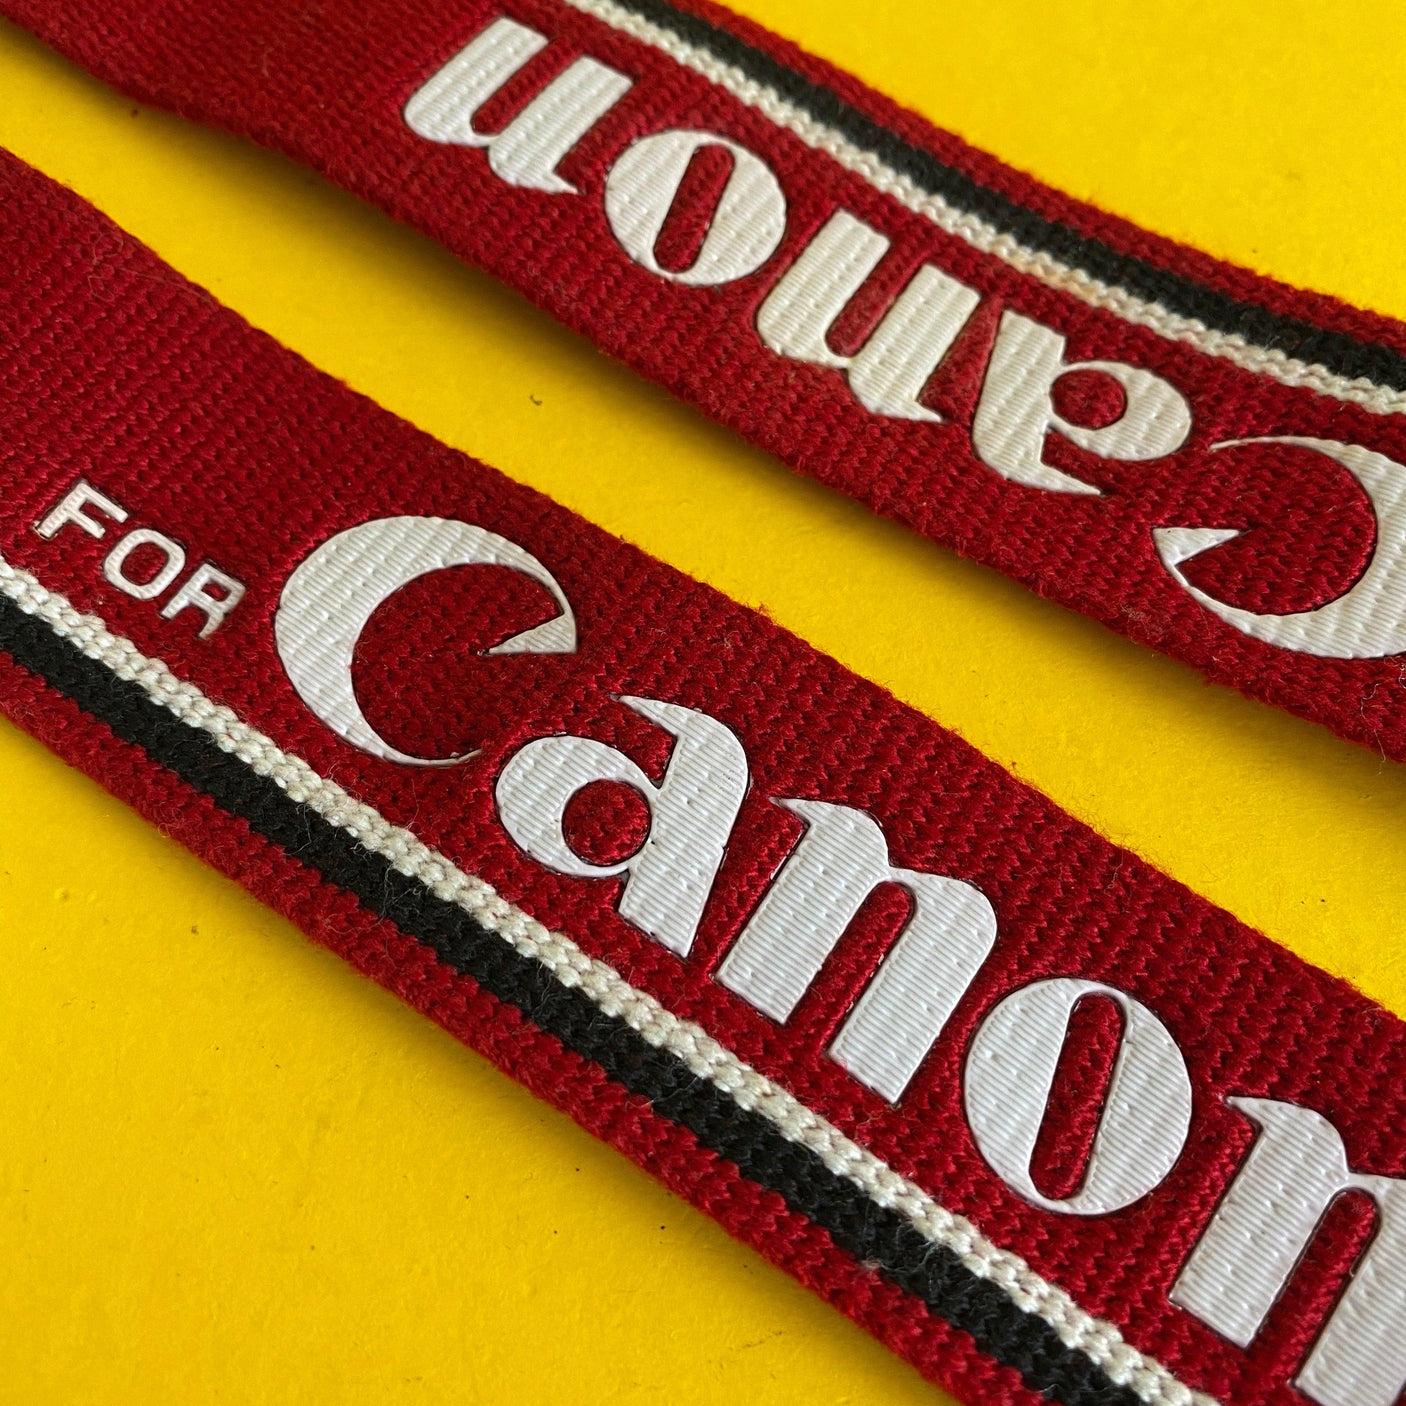 Genuine Canon Red SLR Camera Strap